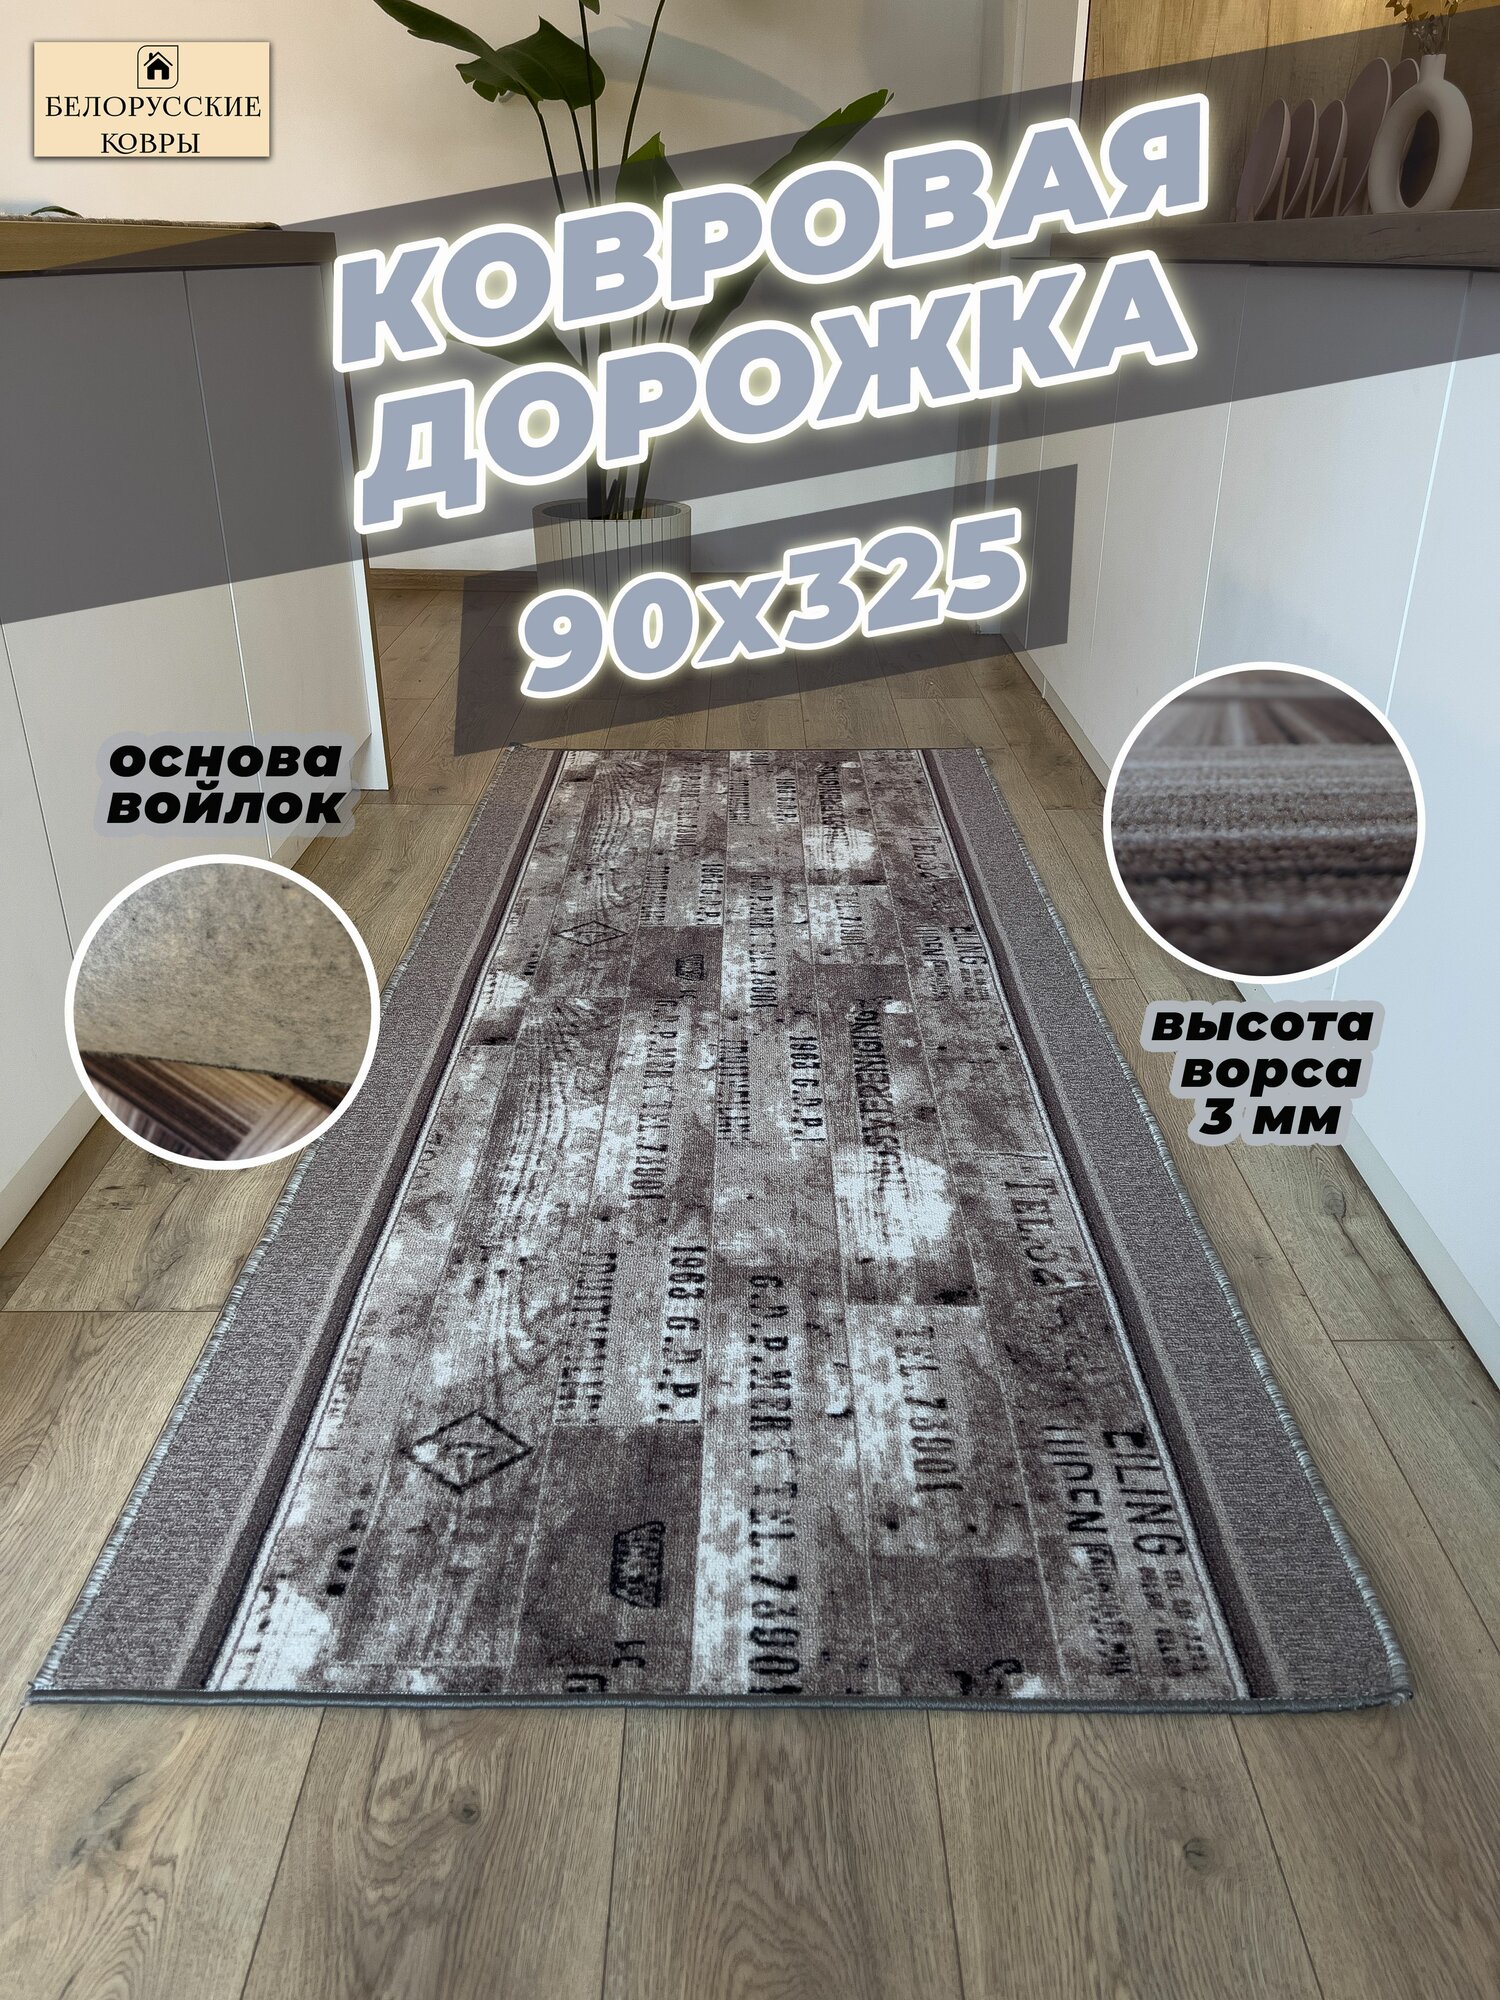 Белорусские ковры, ковровая дорожка 90х325см./0,9х3,25м.